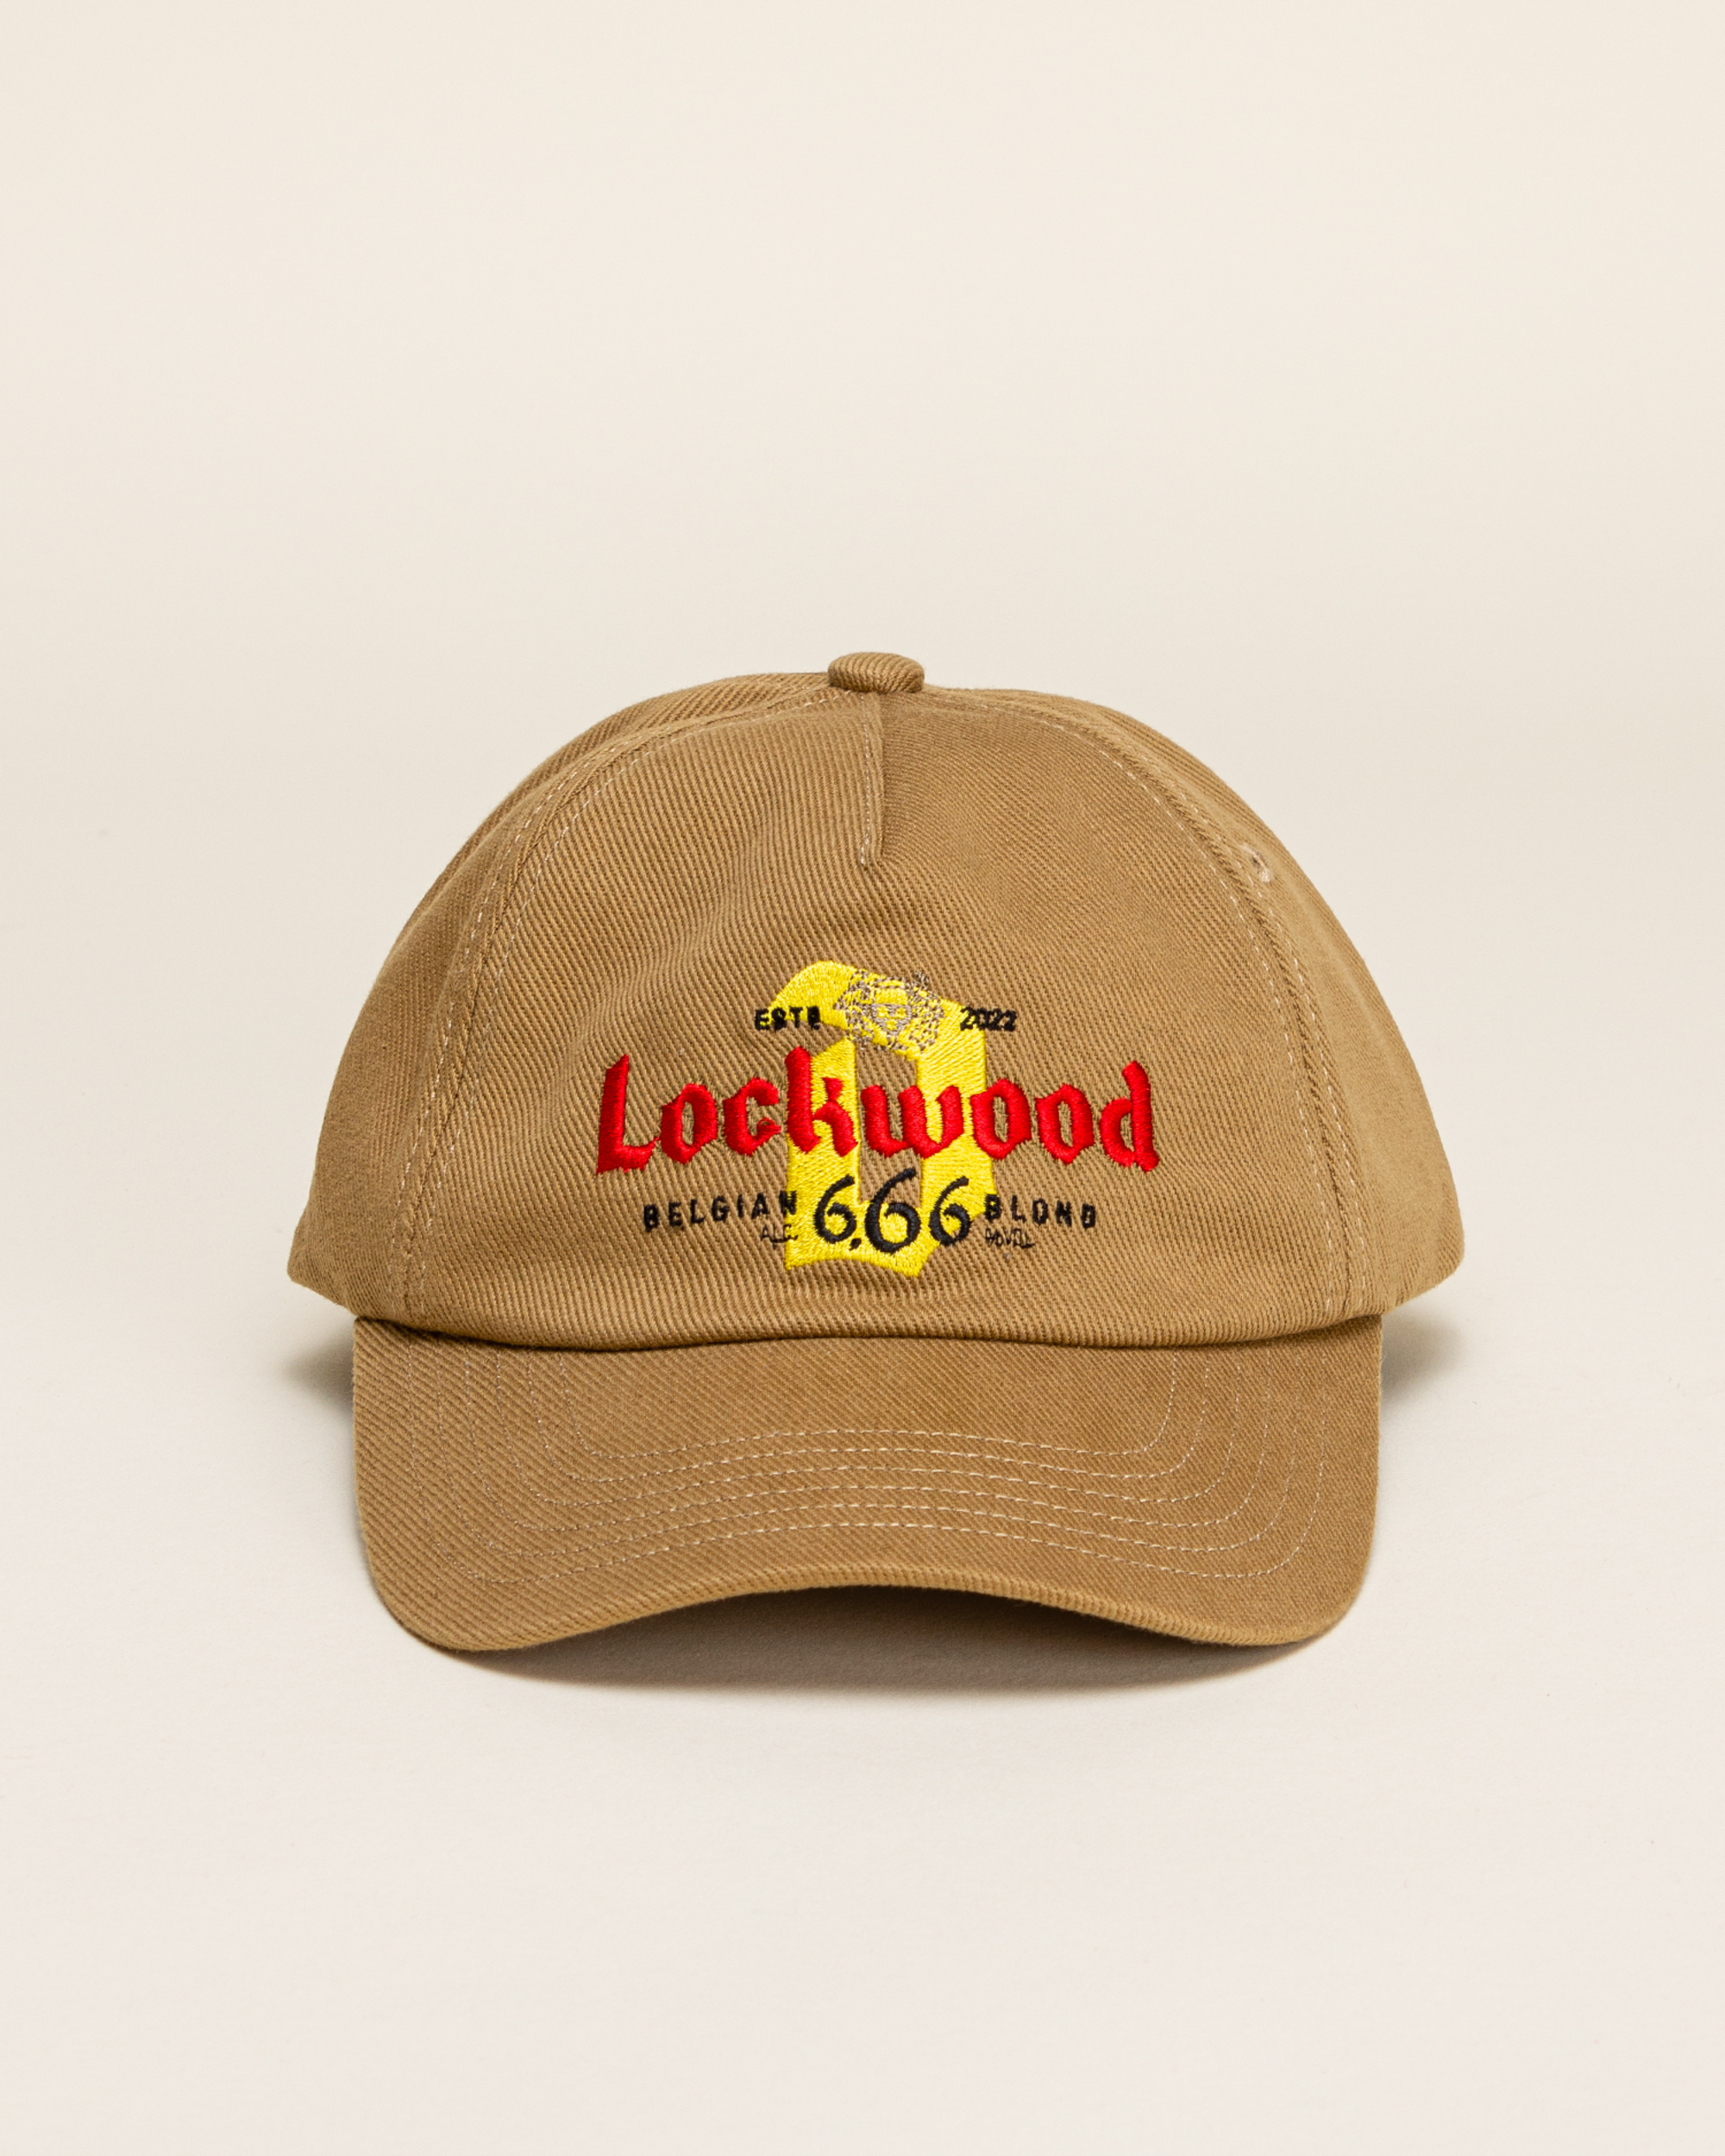 Lockwood X Duvel 666 Cap - Barley Brown